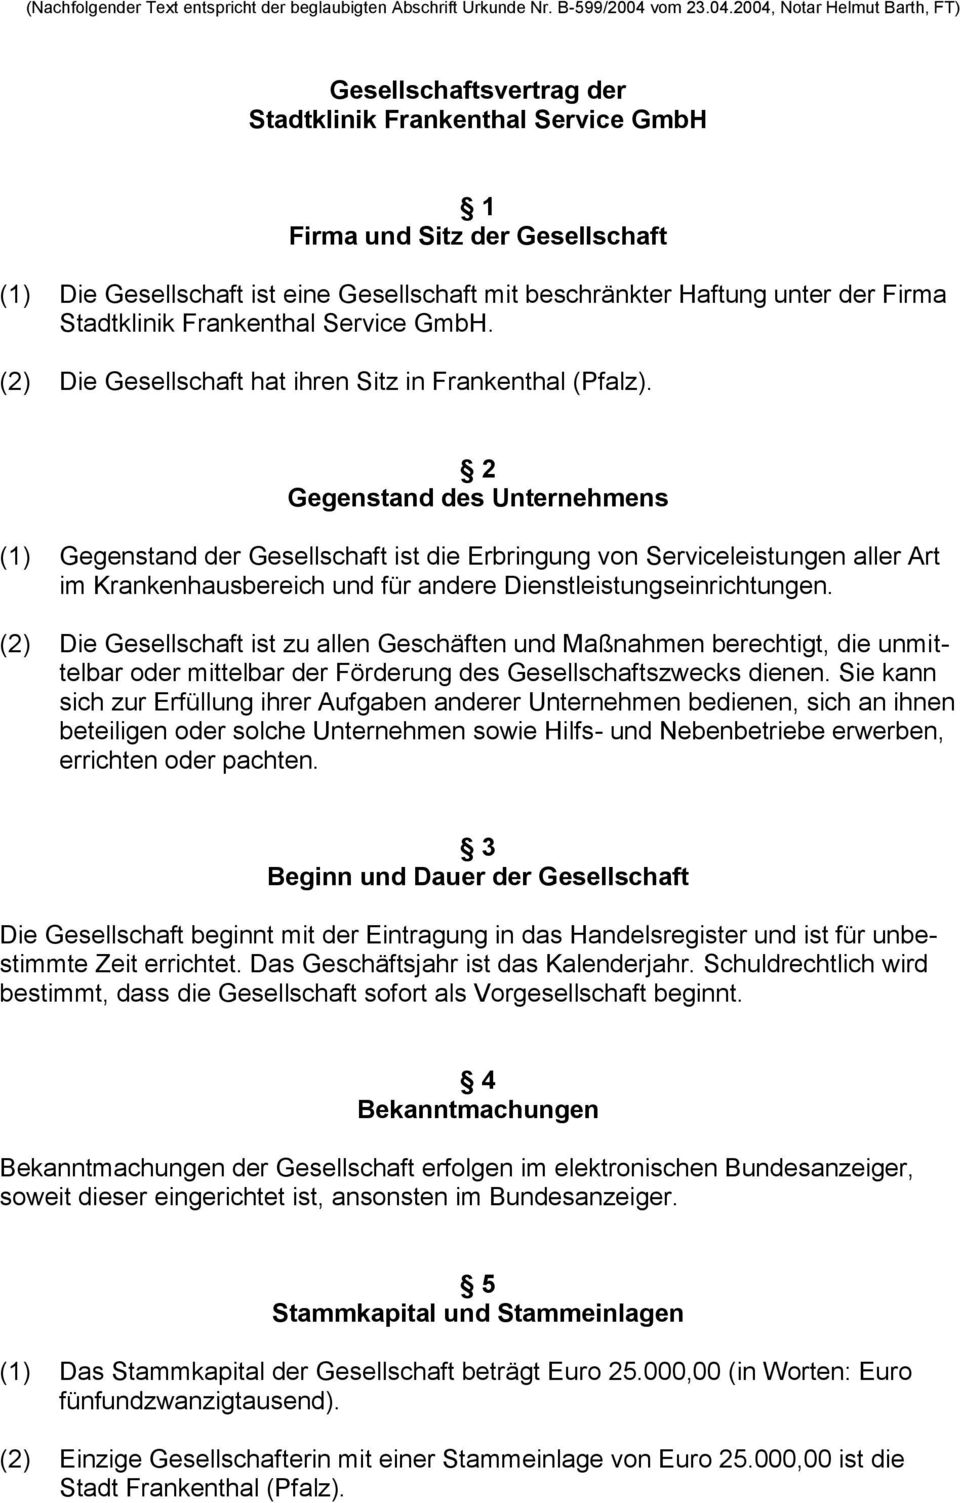 2004, Notar Helmut Barth, FT) Gesellschaftsvertrag der Stadtklinik Frankenthal Service GmbH 1 Firma und Sitz der Gesellschaft (1) Die Gesellschaft ist eine Gesellschaft mit beschränkter Haftung unter